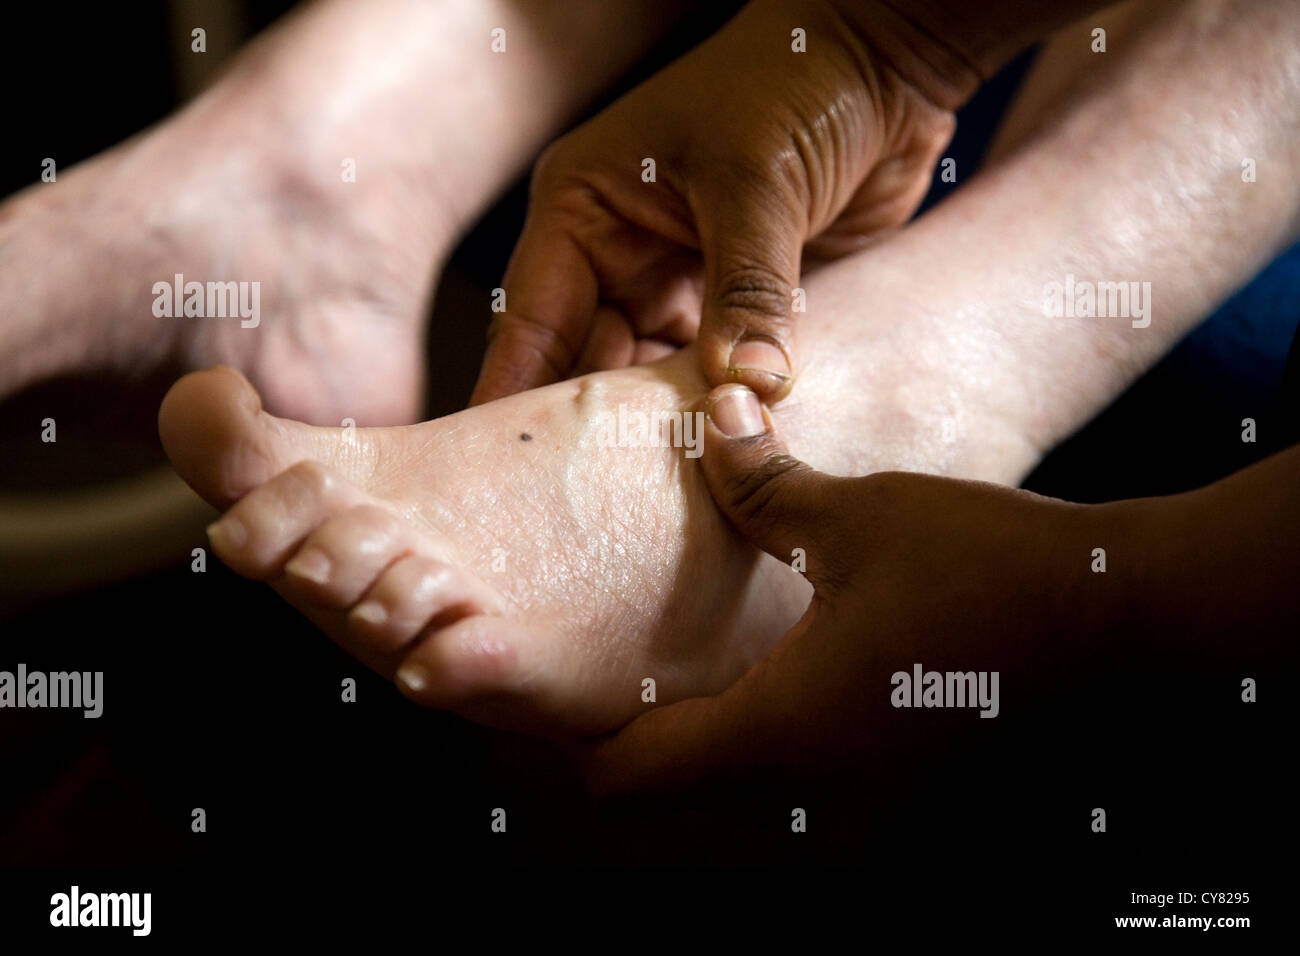 Le pied d'une vieille femme massée / massage des pieds sur un cadre supérieur / PAO / femme / personne. Banque D'Images